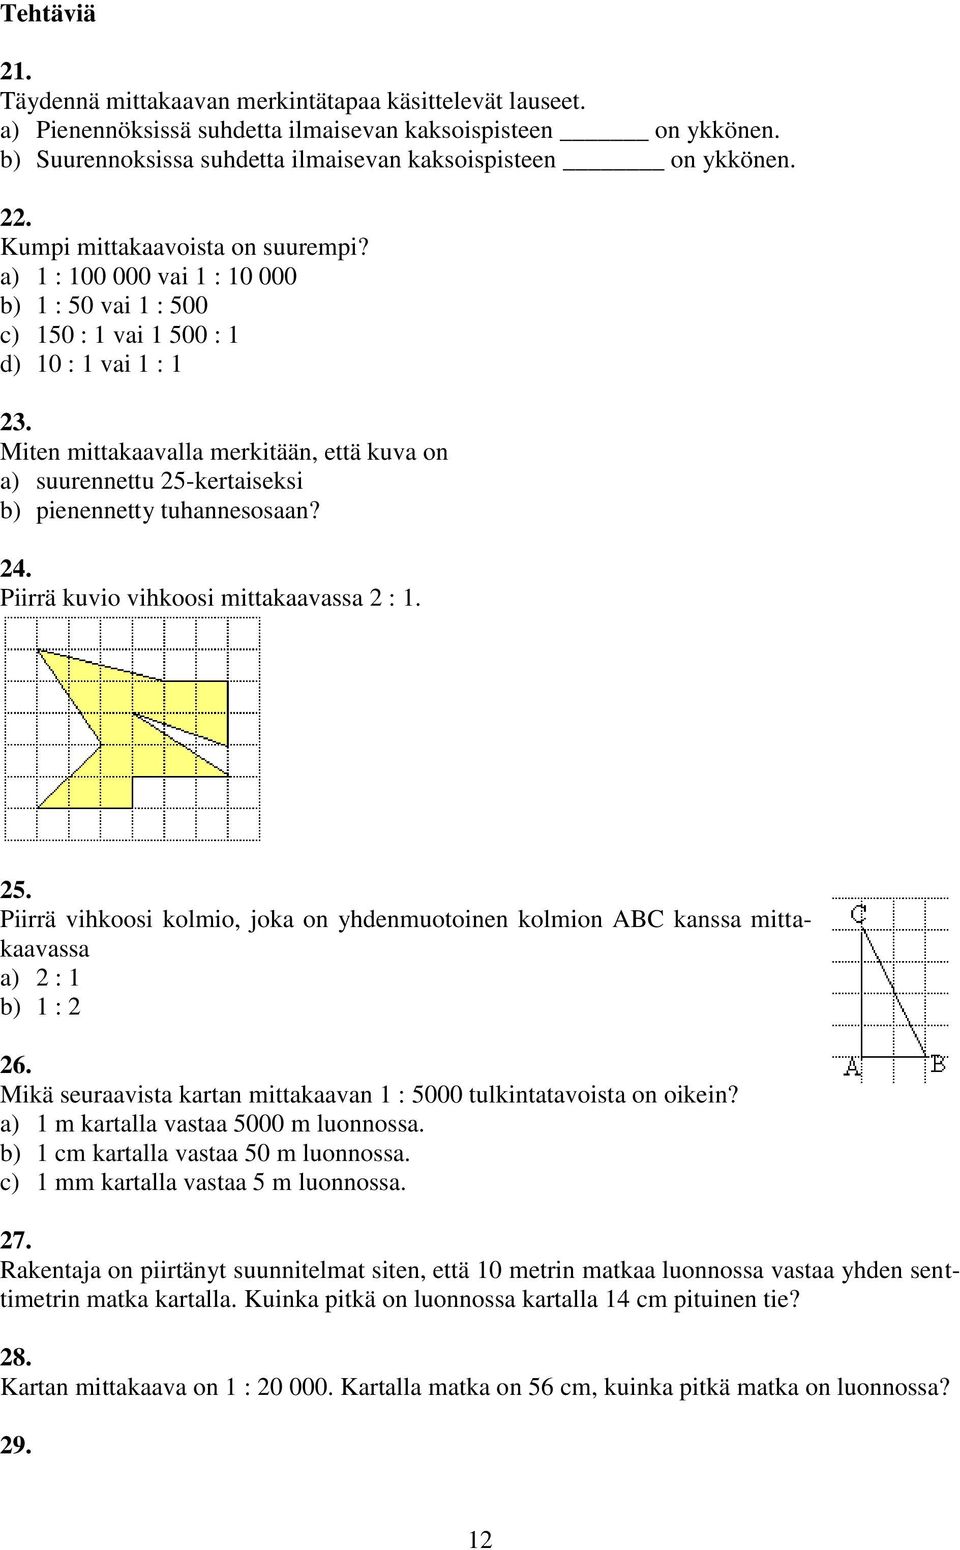 Miten mittakaavalla merkitään, että kuva on a) suurennettu 5-kertaiseksi b) pienennetty tuhannesosaan? 4. Piirrä kuvio vihkoosi mittakaavassa : 1. 5. Piirrä vihkoosi kolmio, joka on yhdenmuotoinen kolmion ABC kanssa mittakaavassa a) : 1 b) 1 : 6.